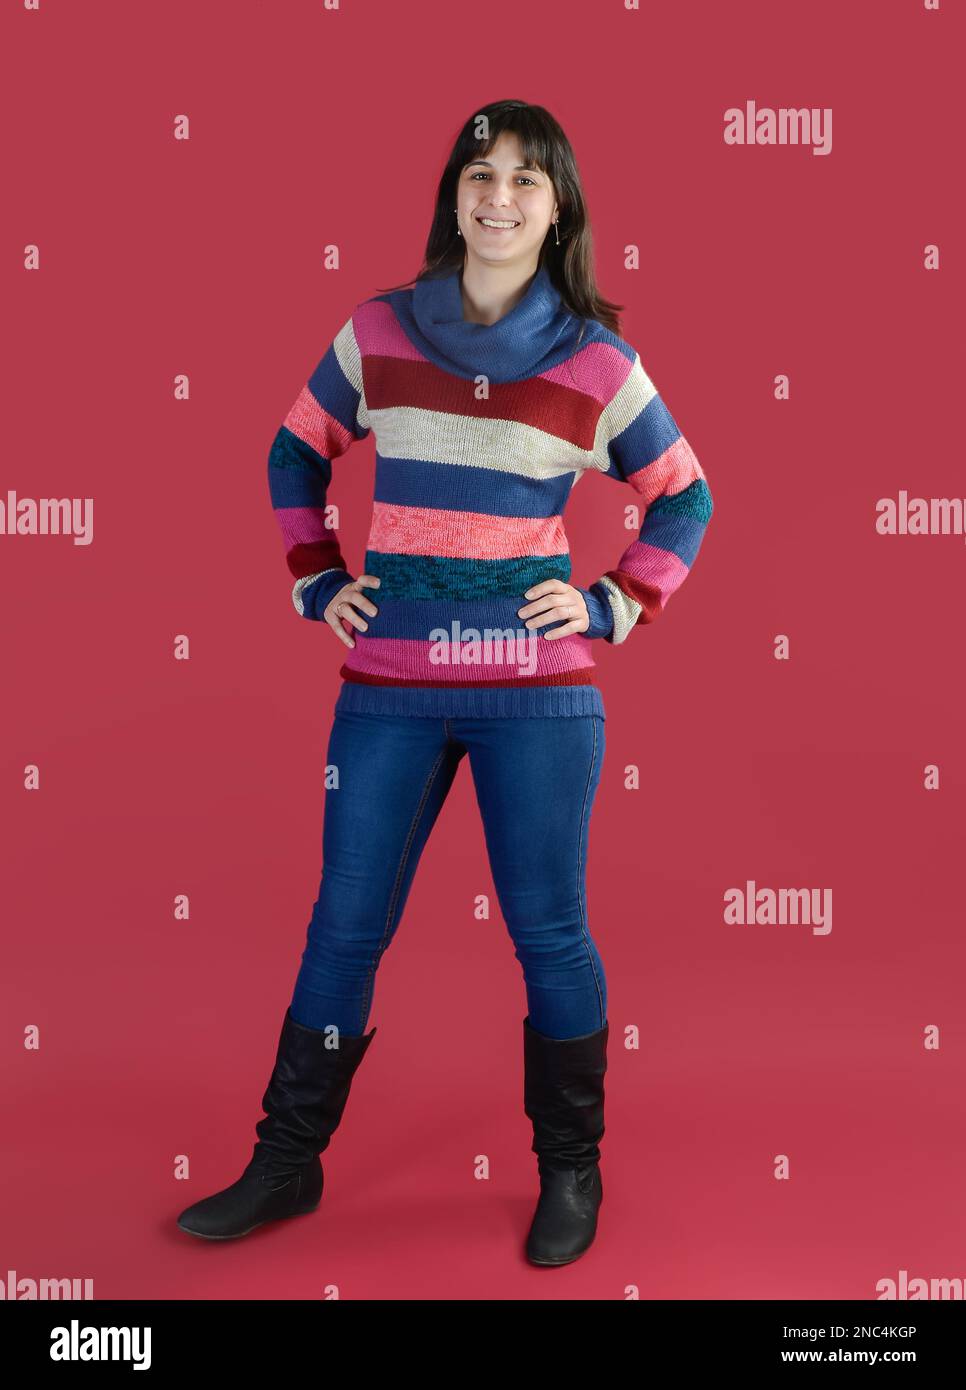 Eine junge Frau lächelt in einem gestreiften Pullover auf den Füßen auf einem magentafarbenen Hintergrund. Stockfoto